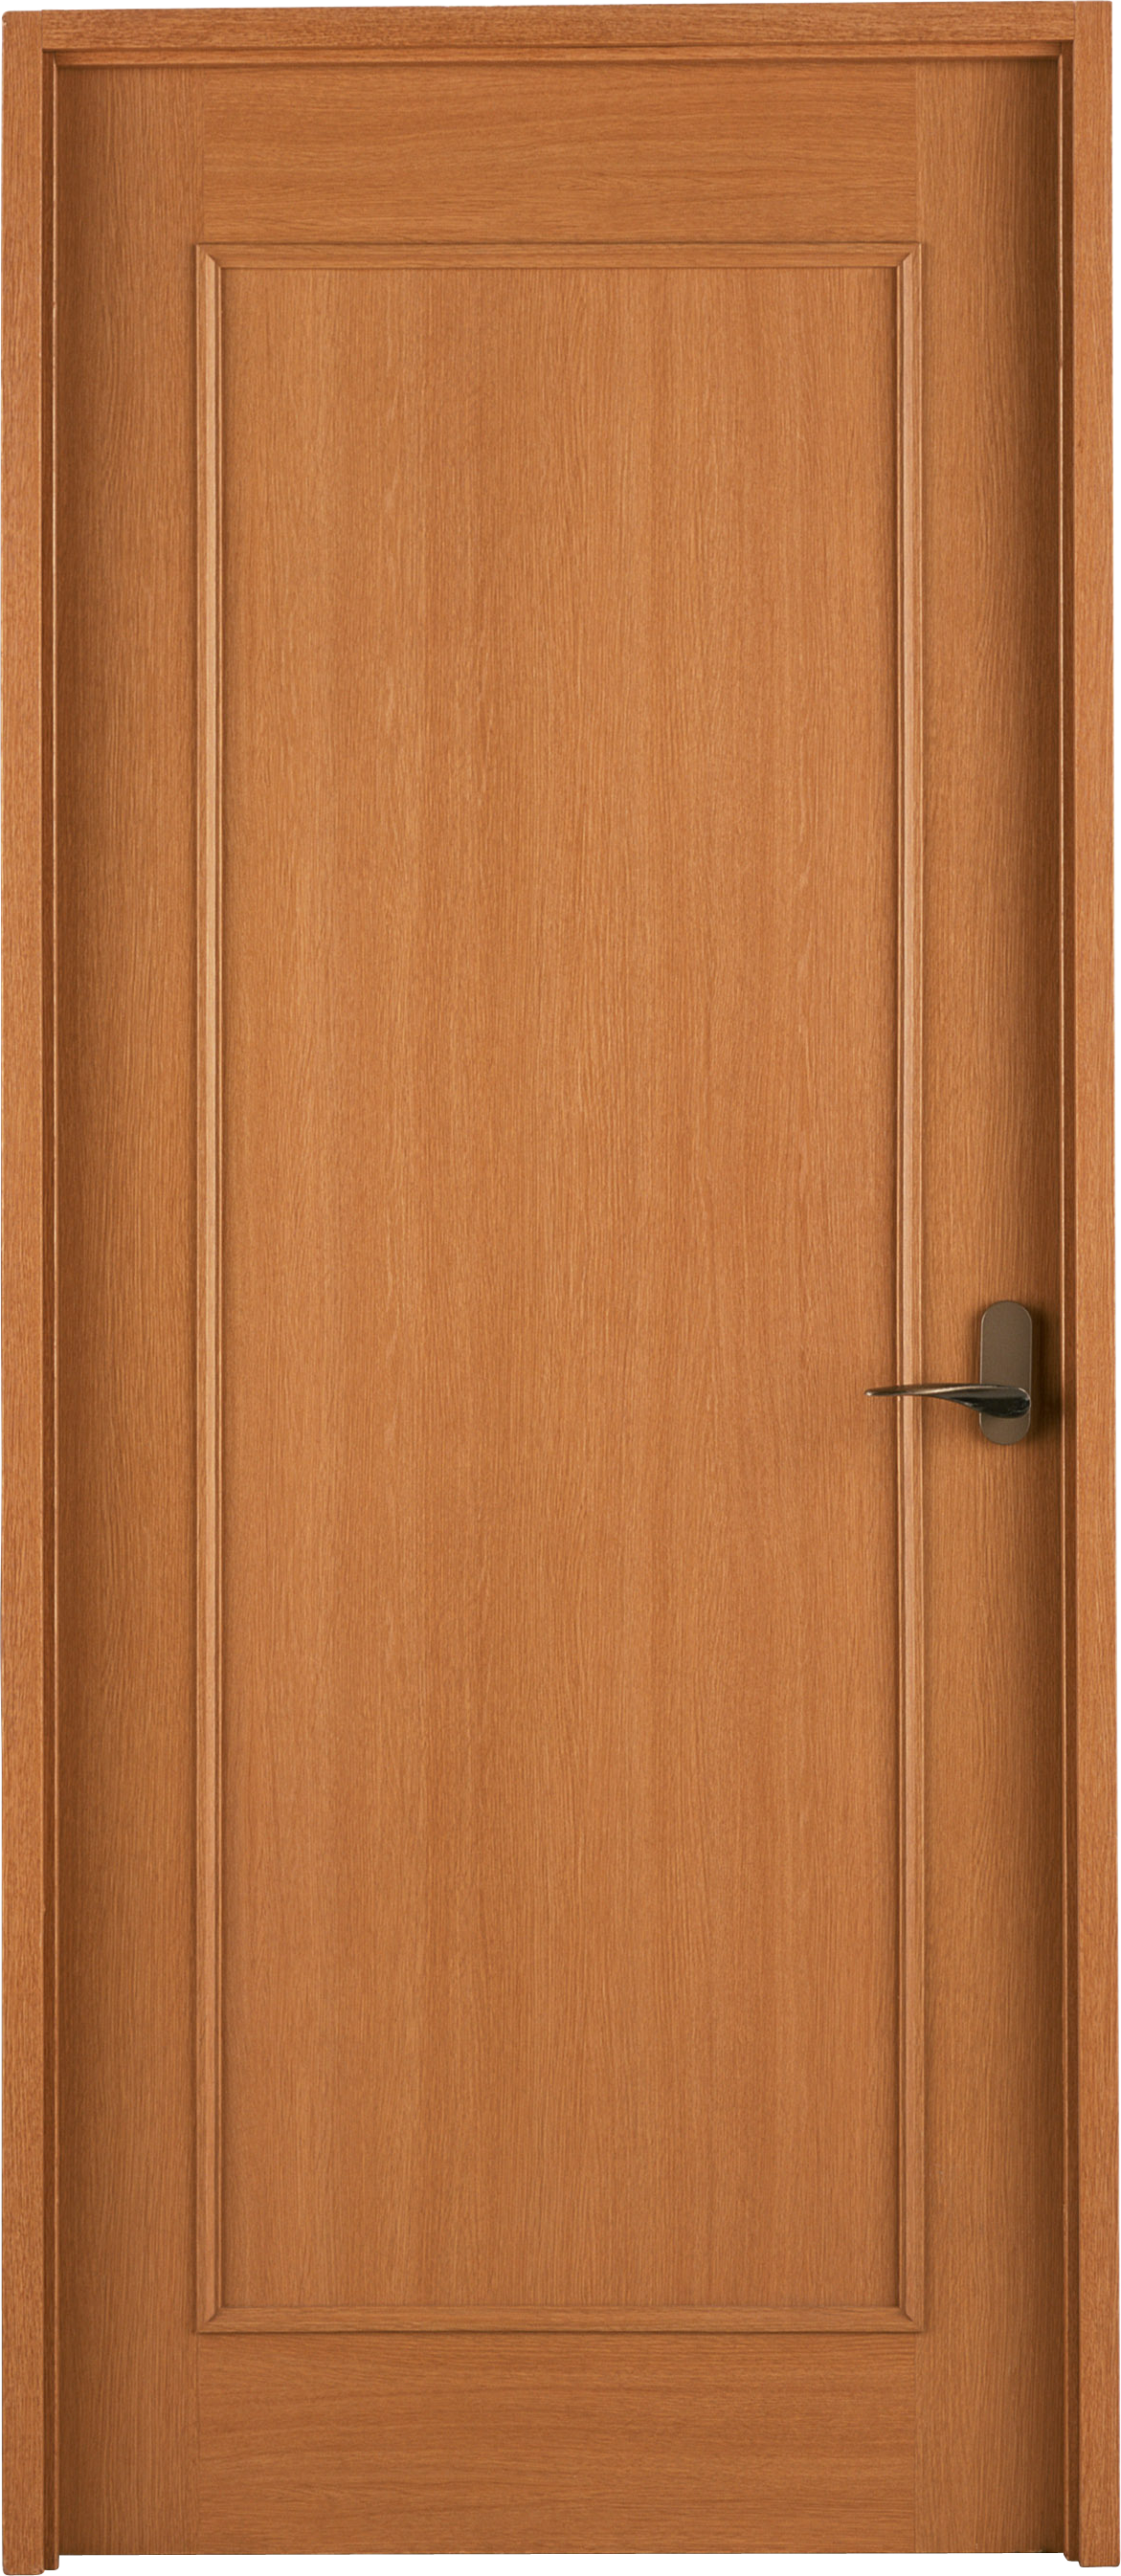 Деревянная дверь PNG